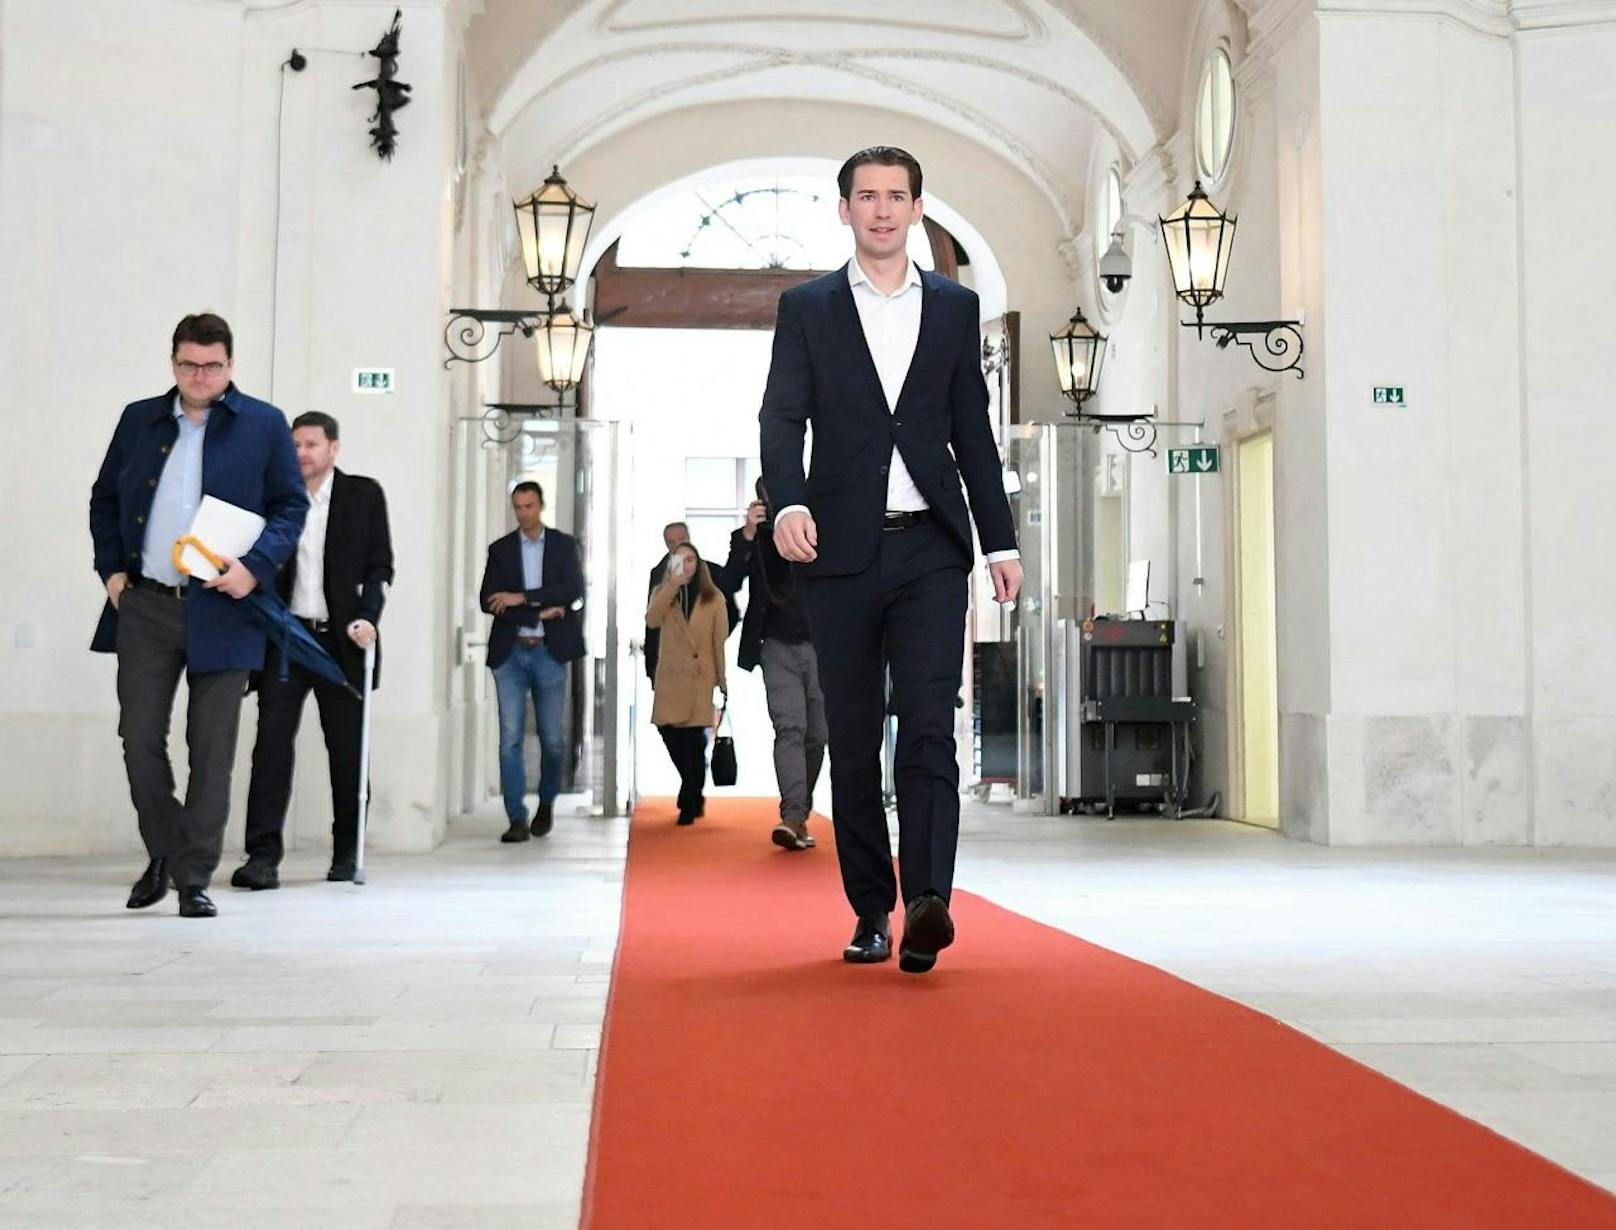 ÖVP-Obmann Sebastian Kurz am Dienstag, 29. Oktober 2019, anlässlich eines Sondierungsgesprächs der ÖVP mit den Grünen in Wien: Inzwischen befinden sich die Koalitionsverhandlungen auf der Zielgeraden.